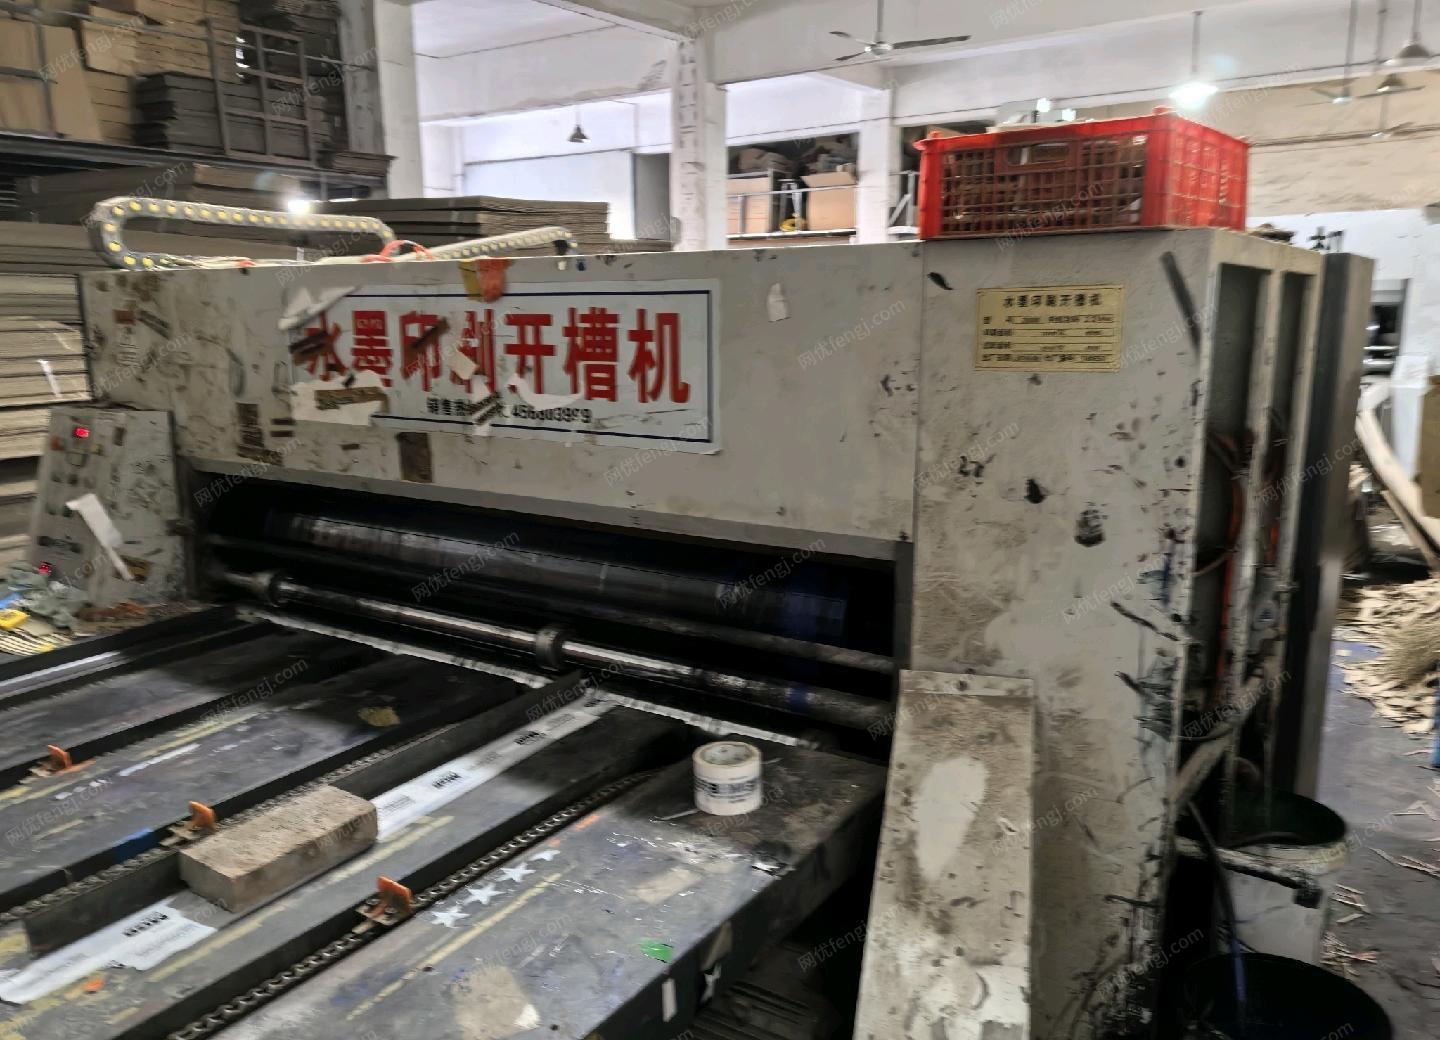 浙江宁波处理18-19年河北2000×900双色水墨开槽印刷机，处理价2万